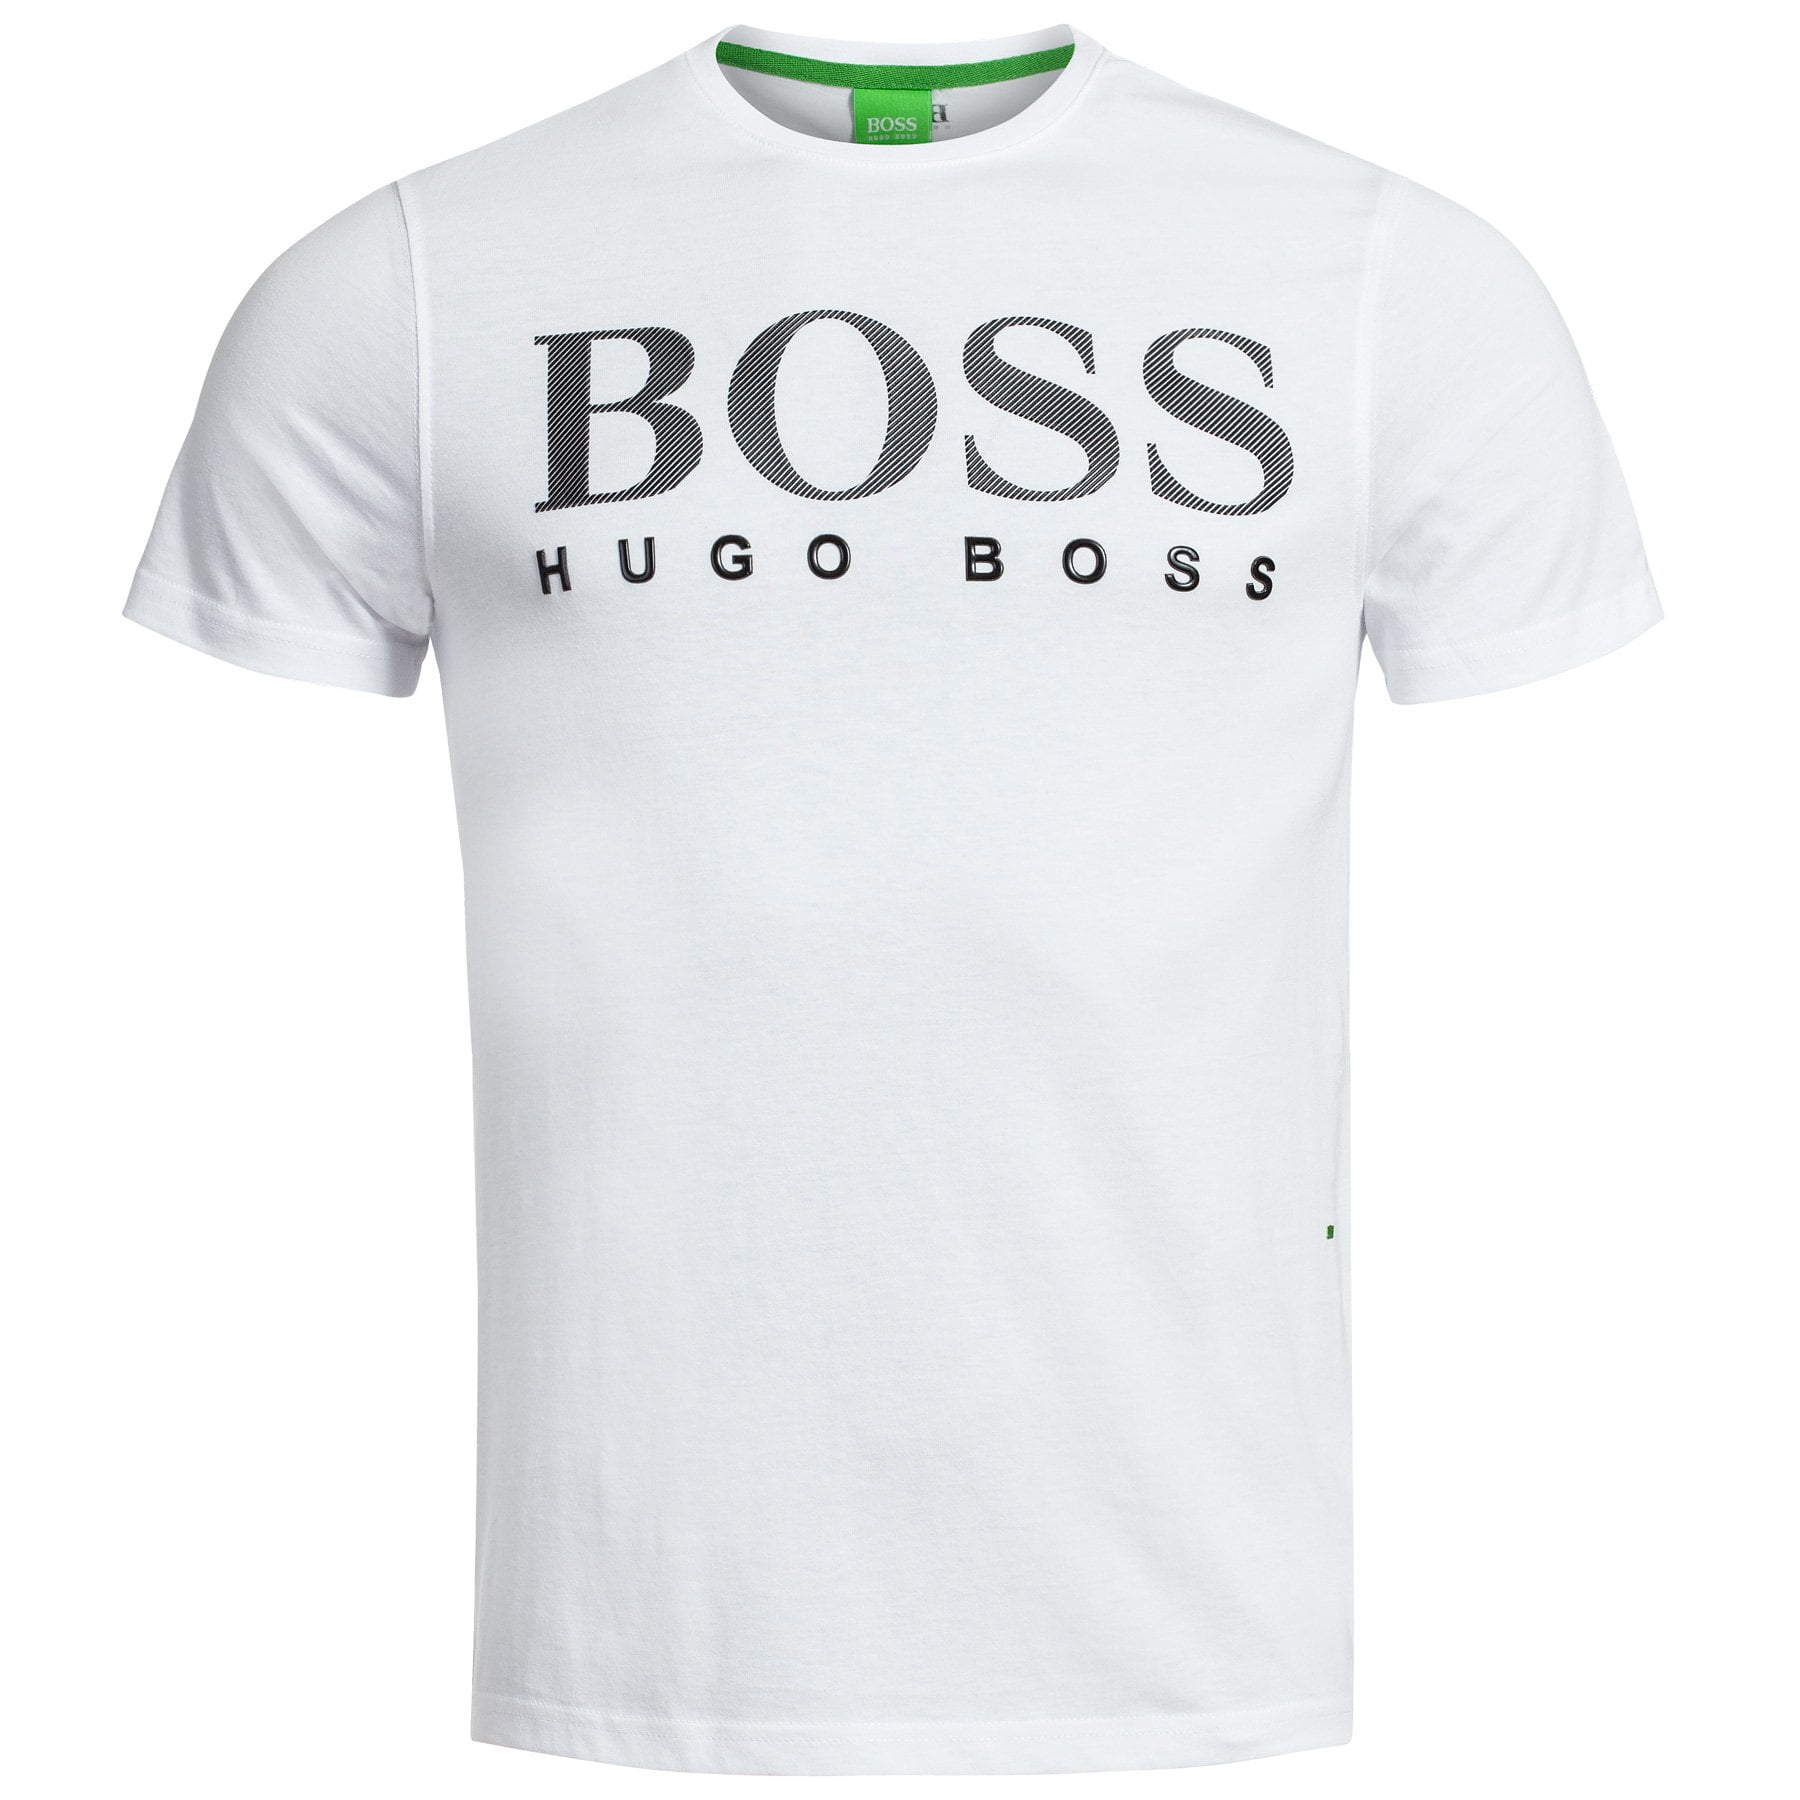 hugo boss men's 3 pack t shirt